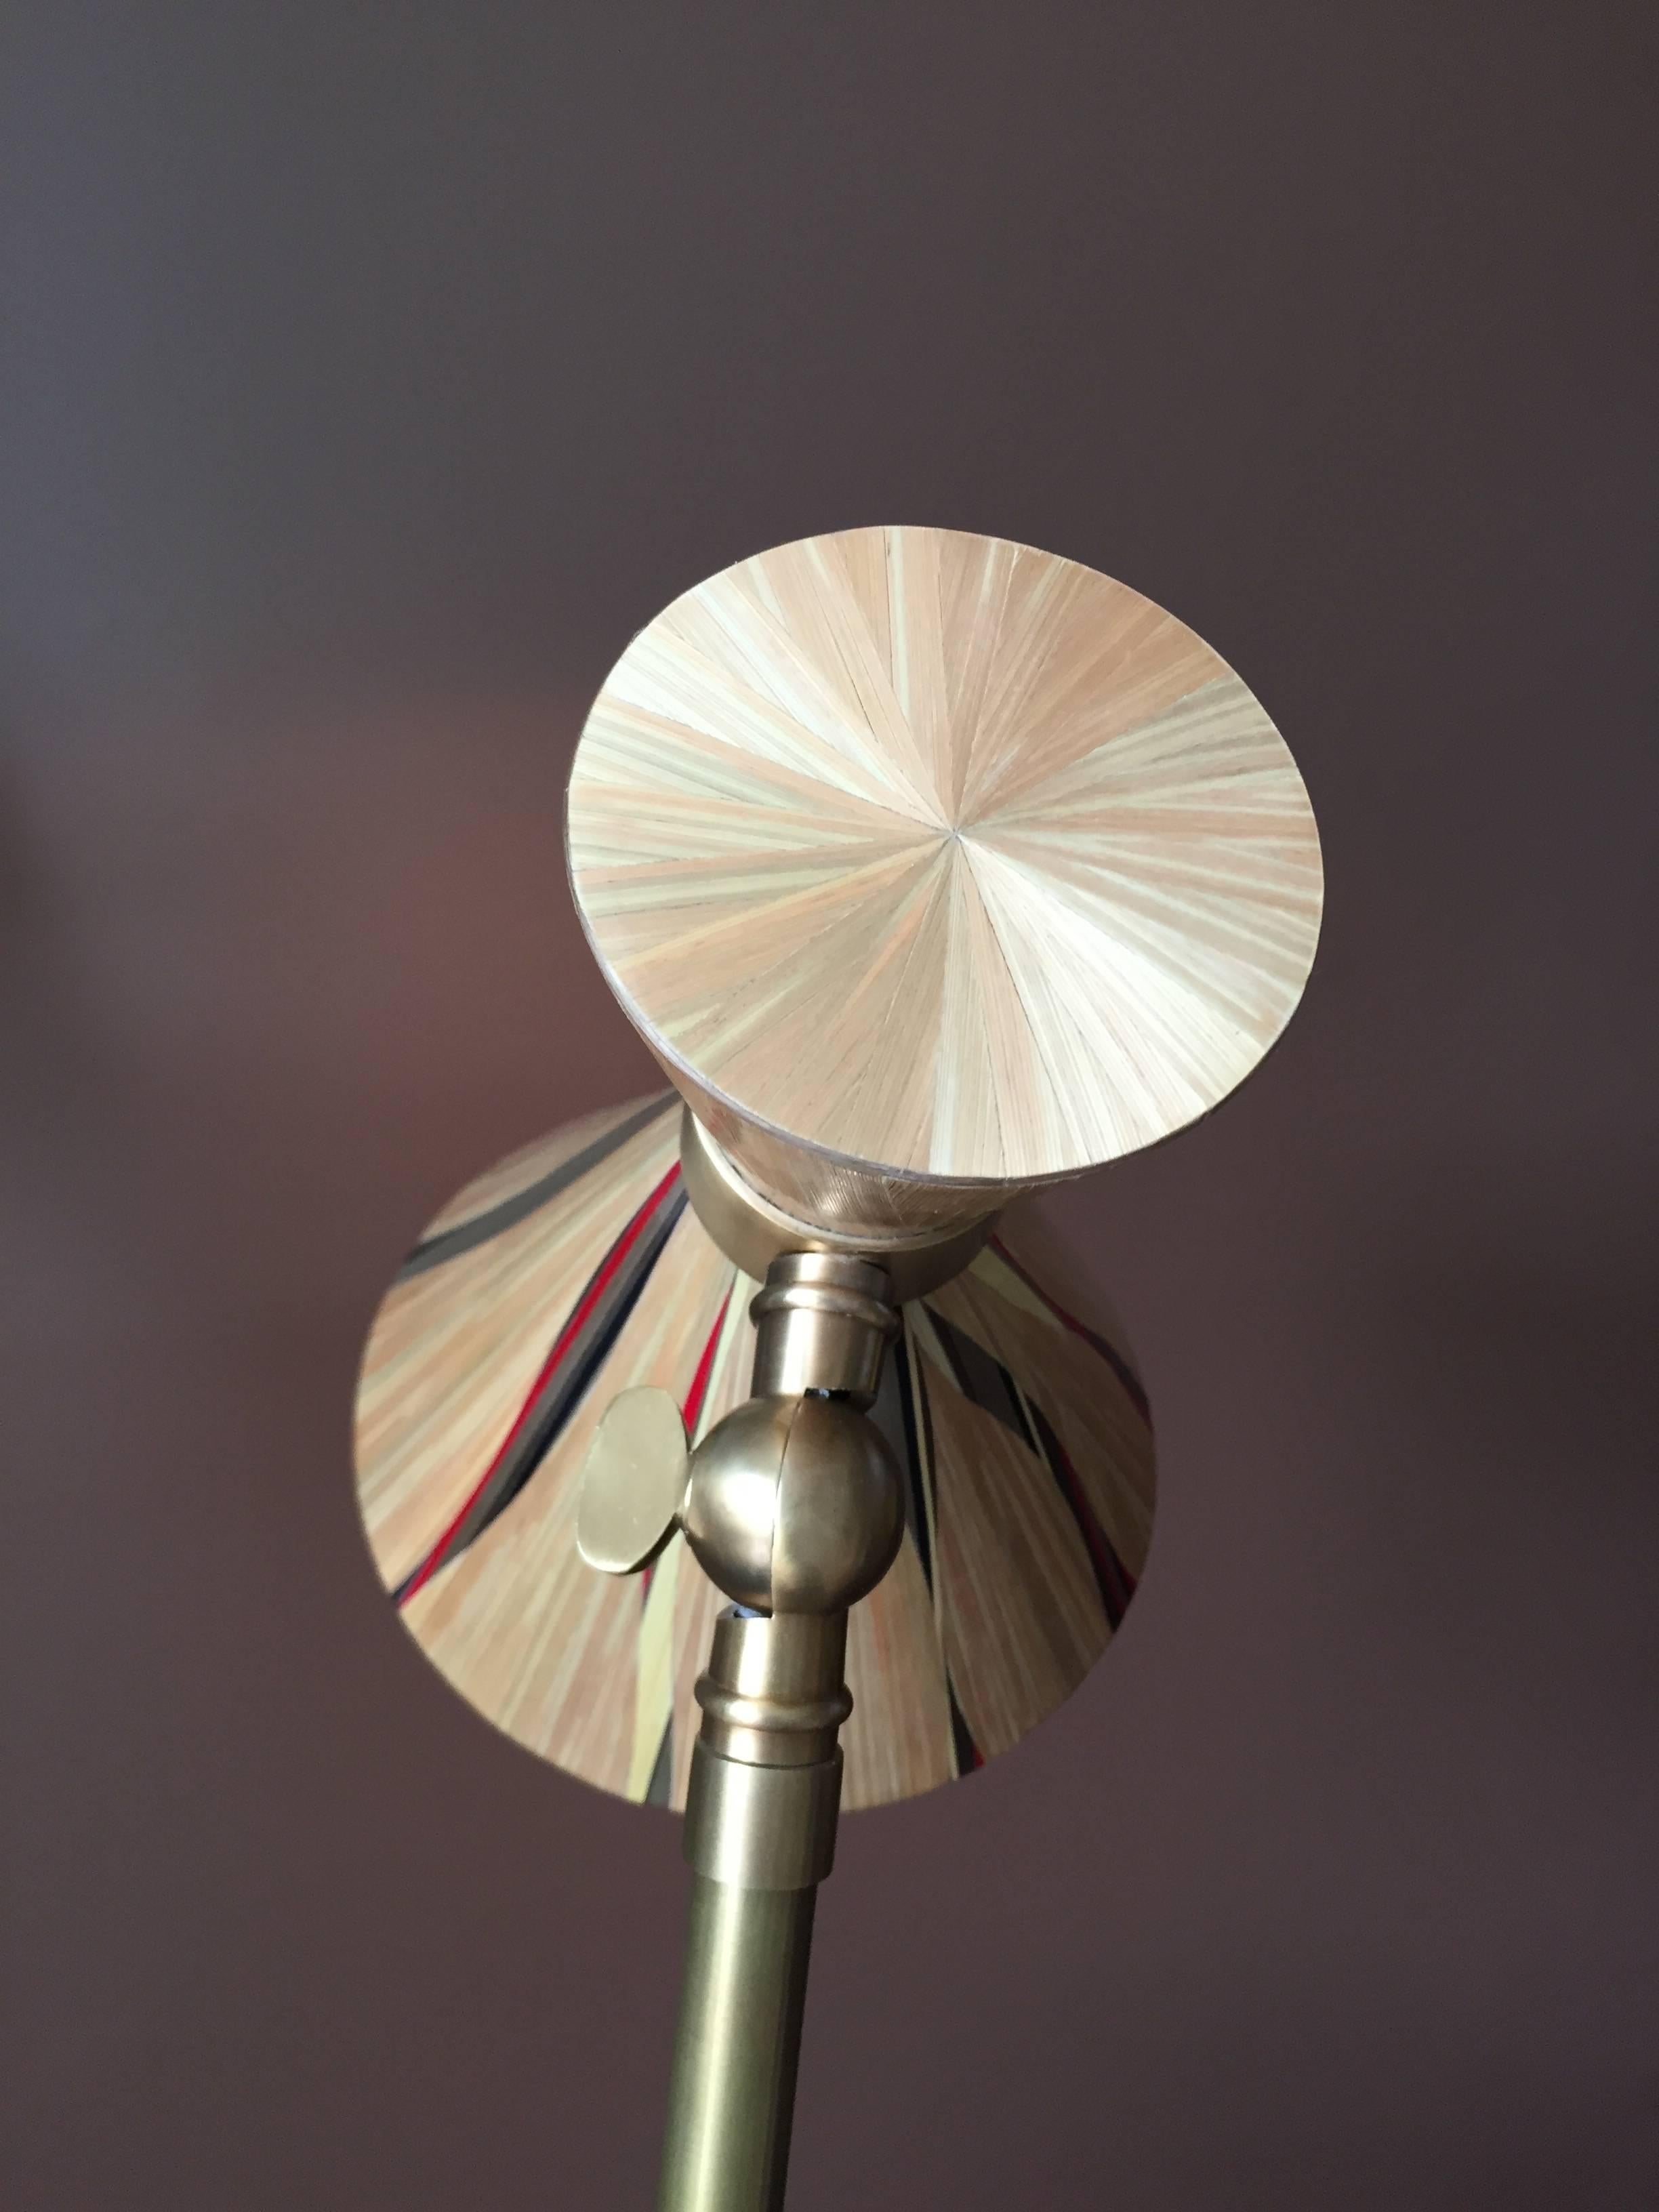 Lampe de table en marqueterie de paille dorée avec quelques inserts colorés dans une base en laiton. Paille naturelle, rouge et bronze.


Paille et marqueterie, matière et technique :

Dès le XVIIe siècle, la marqueterie de paille est utilisée